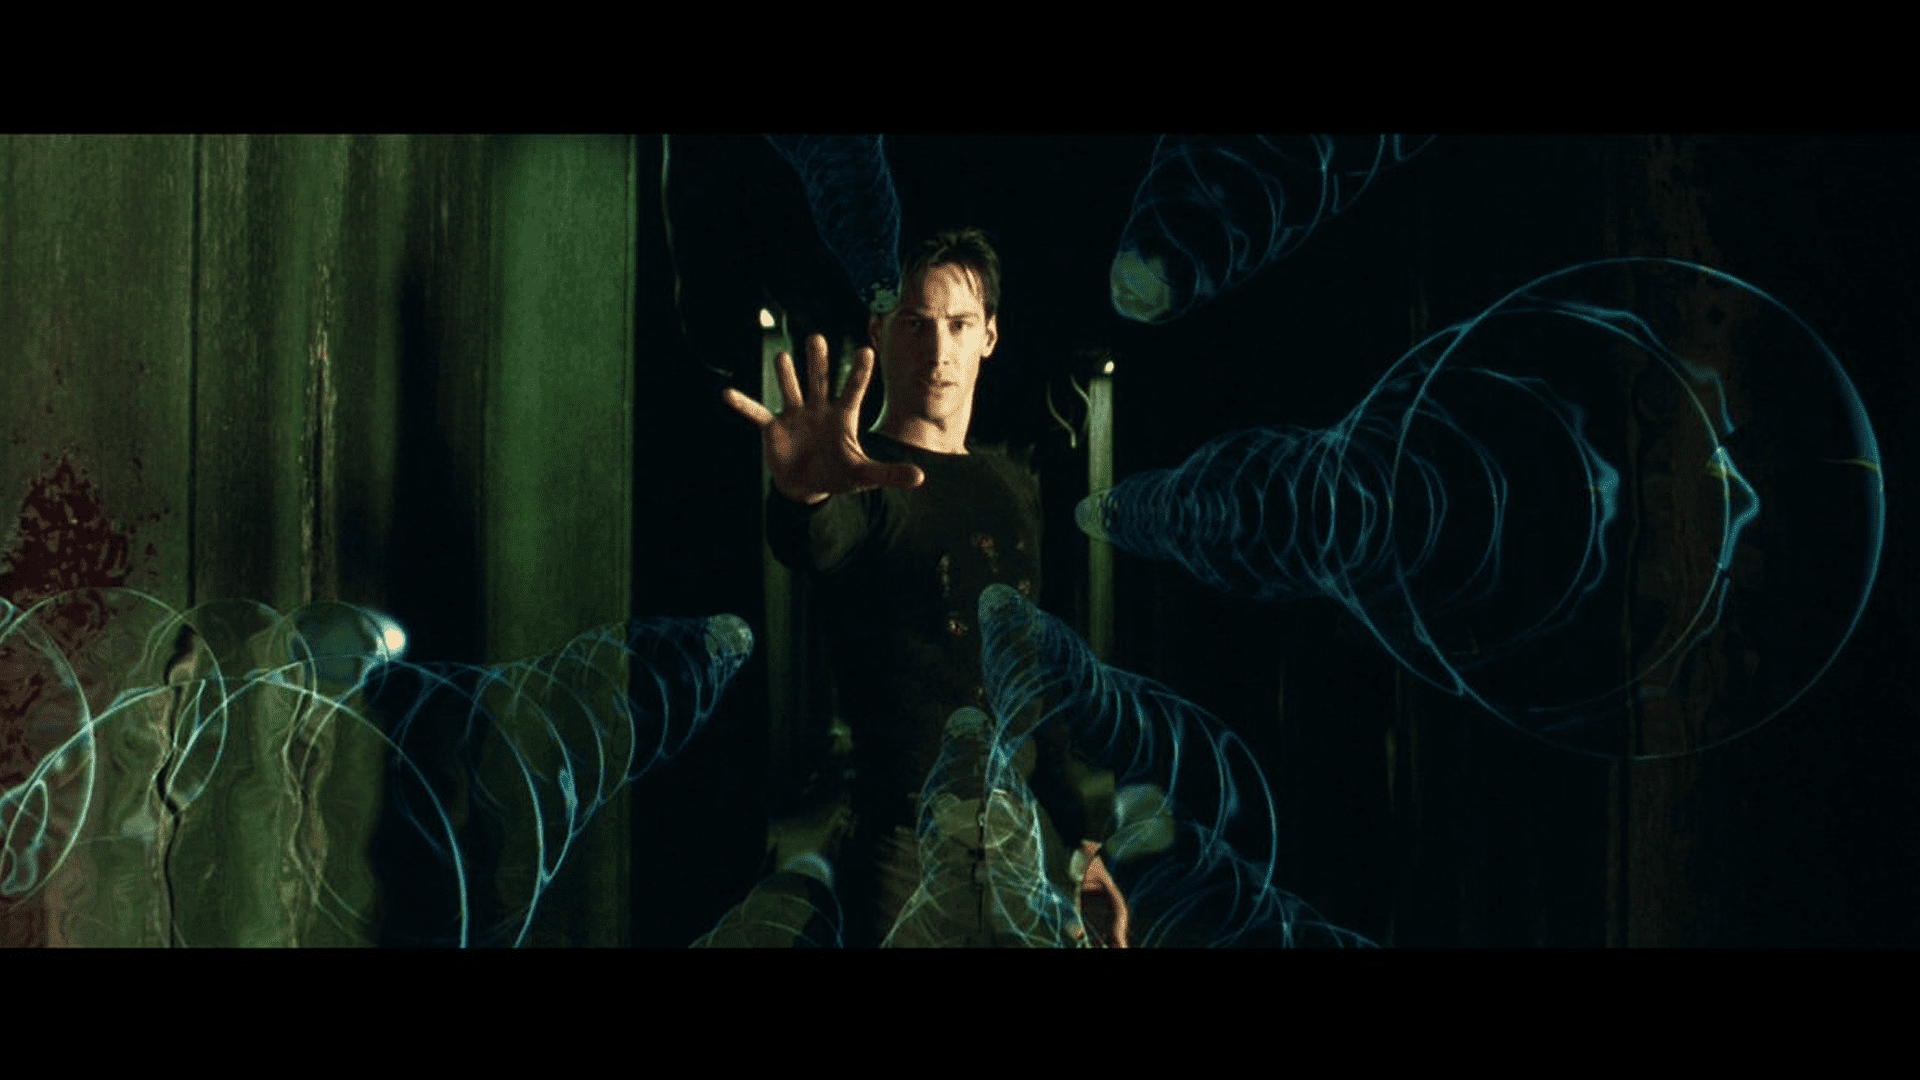 Du kan ha kul med att se The Matrix Trilogy på Netflix från och med idag